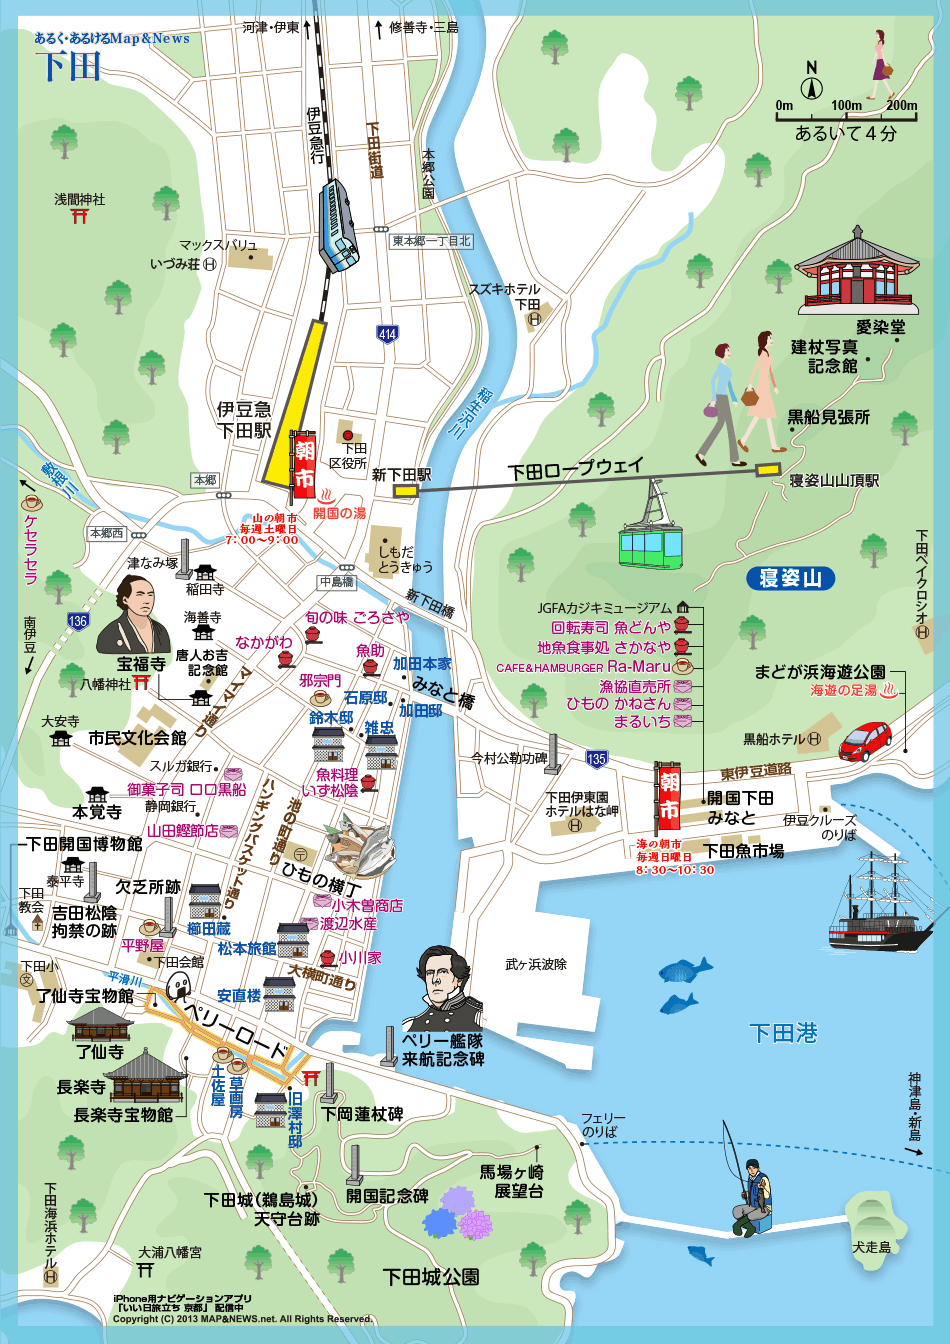 静岡県 伊豆下田 あるく あるけるマップ ニュース 観光あるき地図